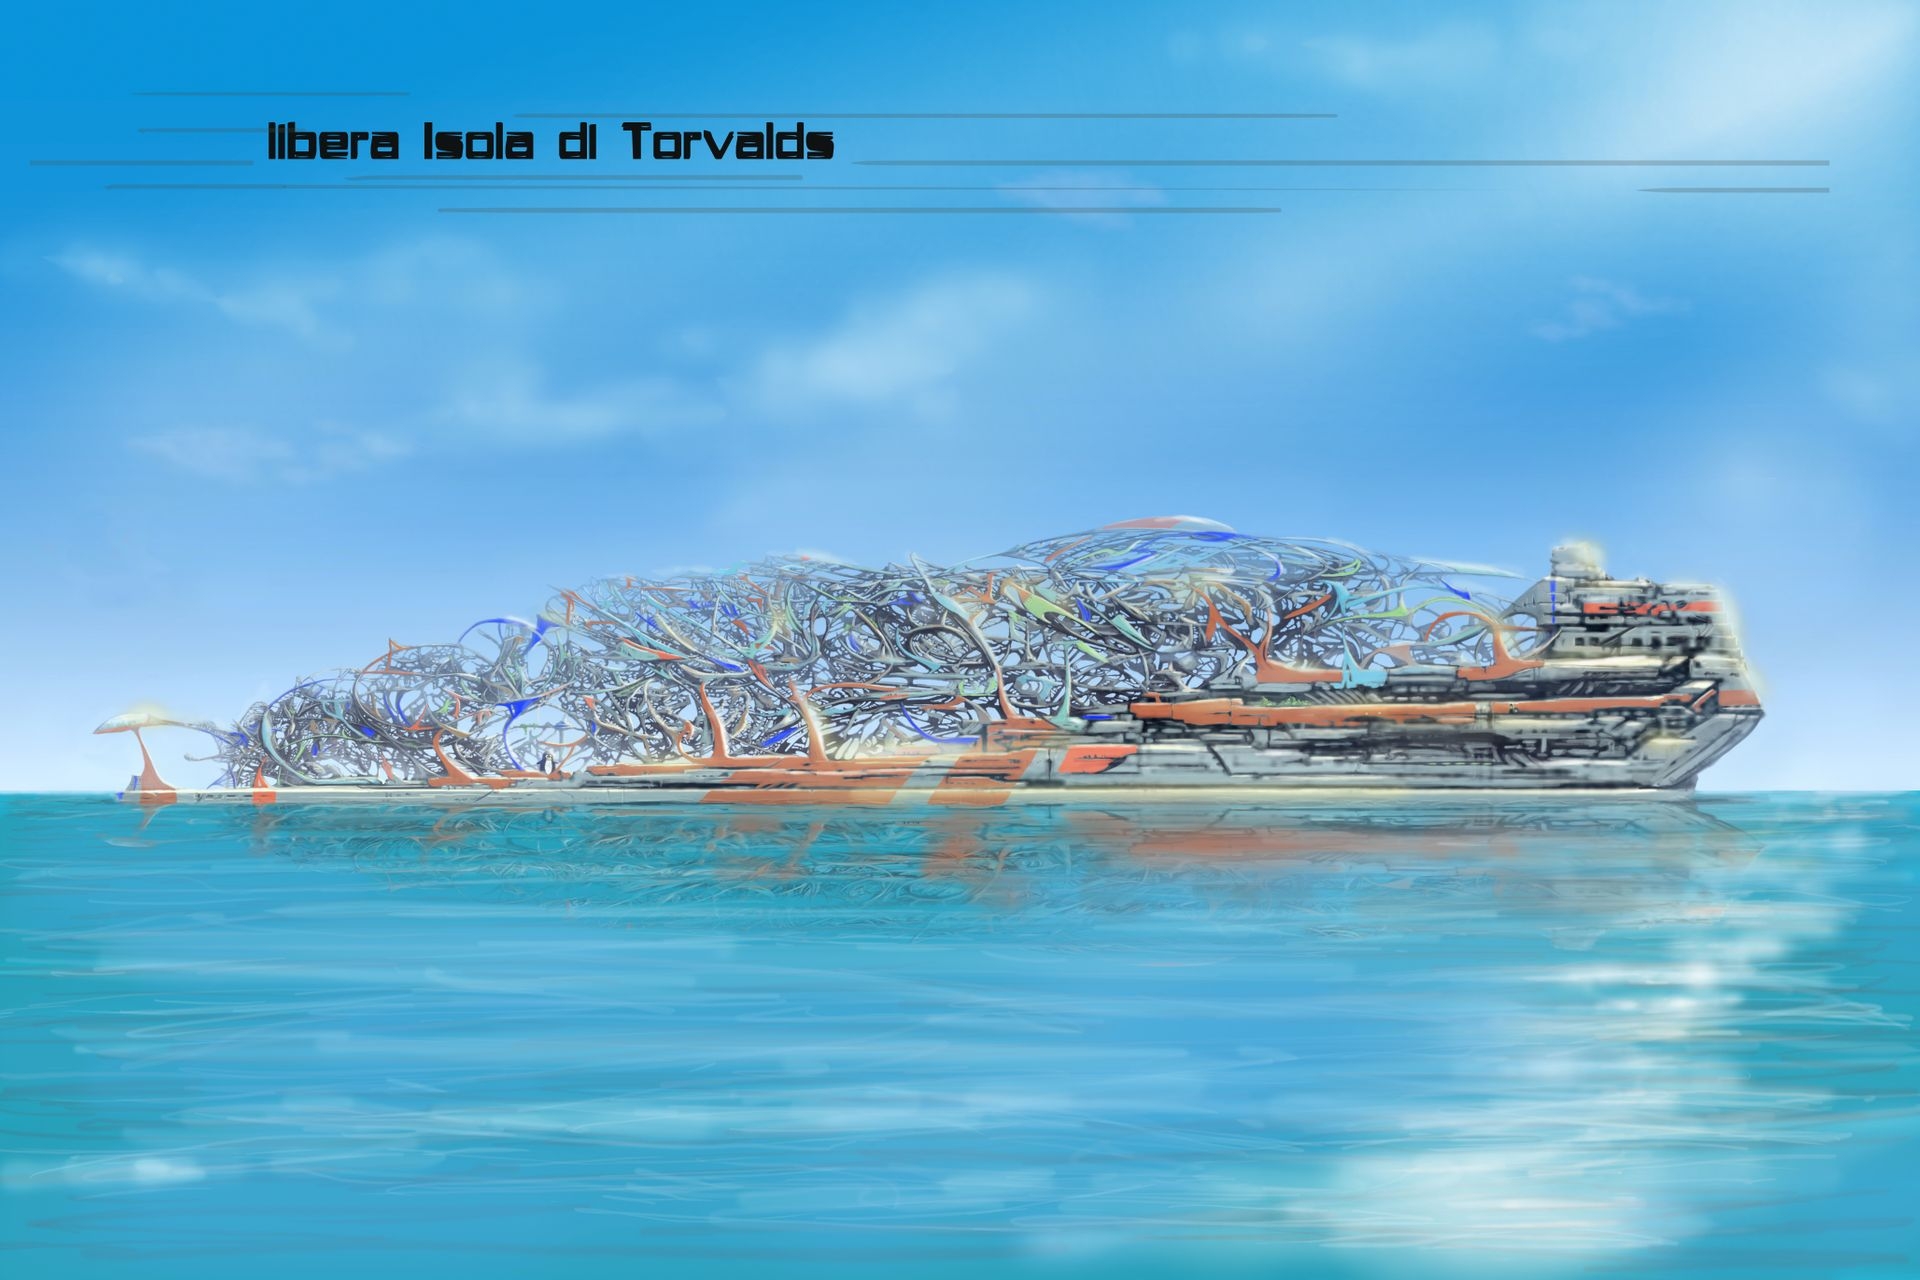 Інноваційна література: ілюстрація вільного острова Торвальда в «Проекті Монтекрісто — перша колонія» Едоардо Вольпі Келлермана